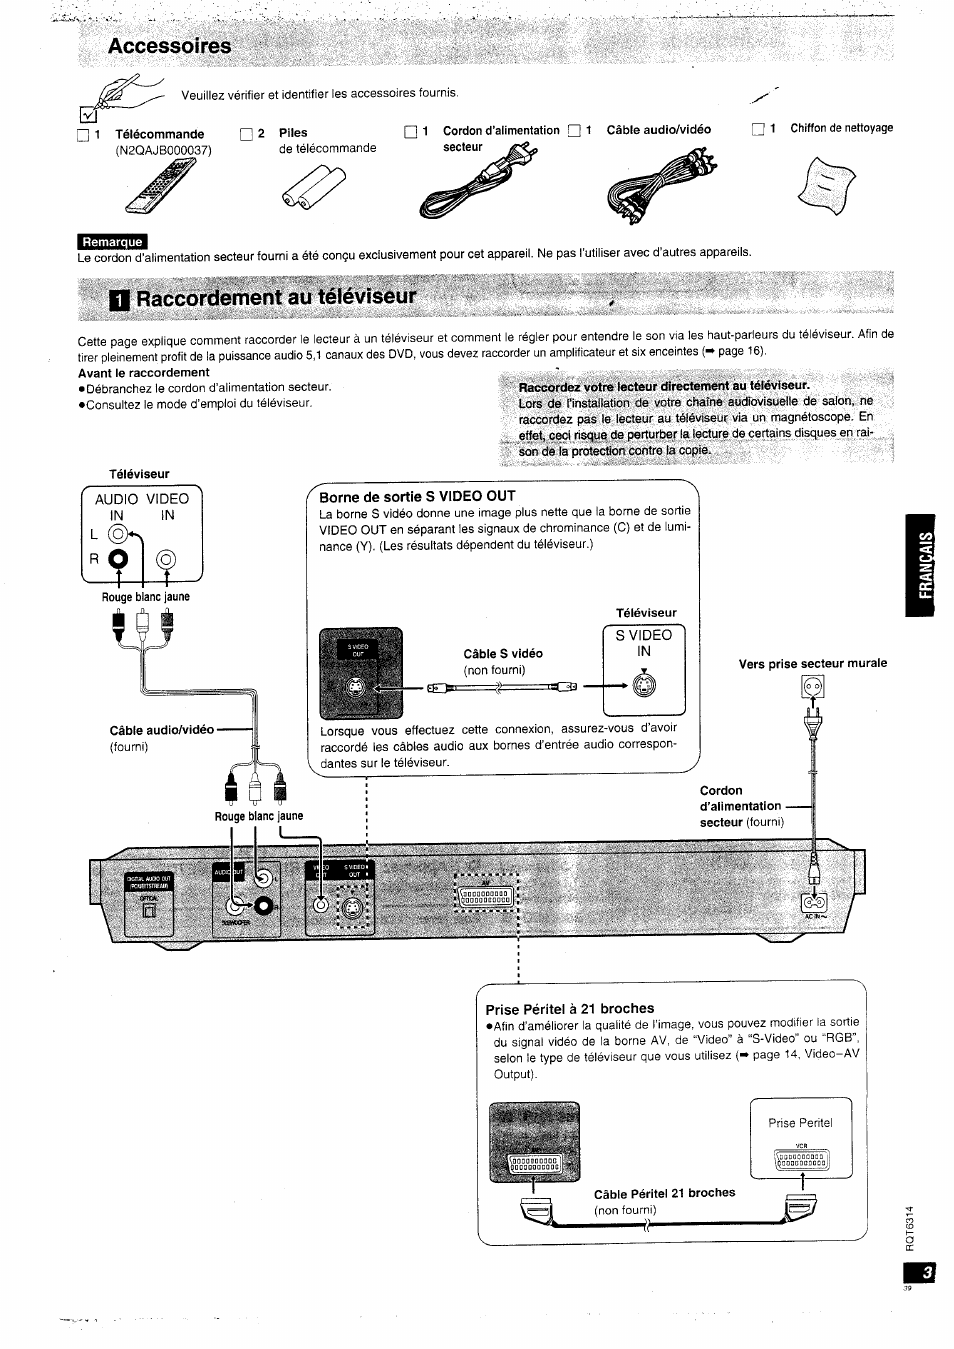 Accessoires, N raccordement au téléviseur | Panasonic DVDXV10EG Manuel d'utilisation | Page 3 / 20